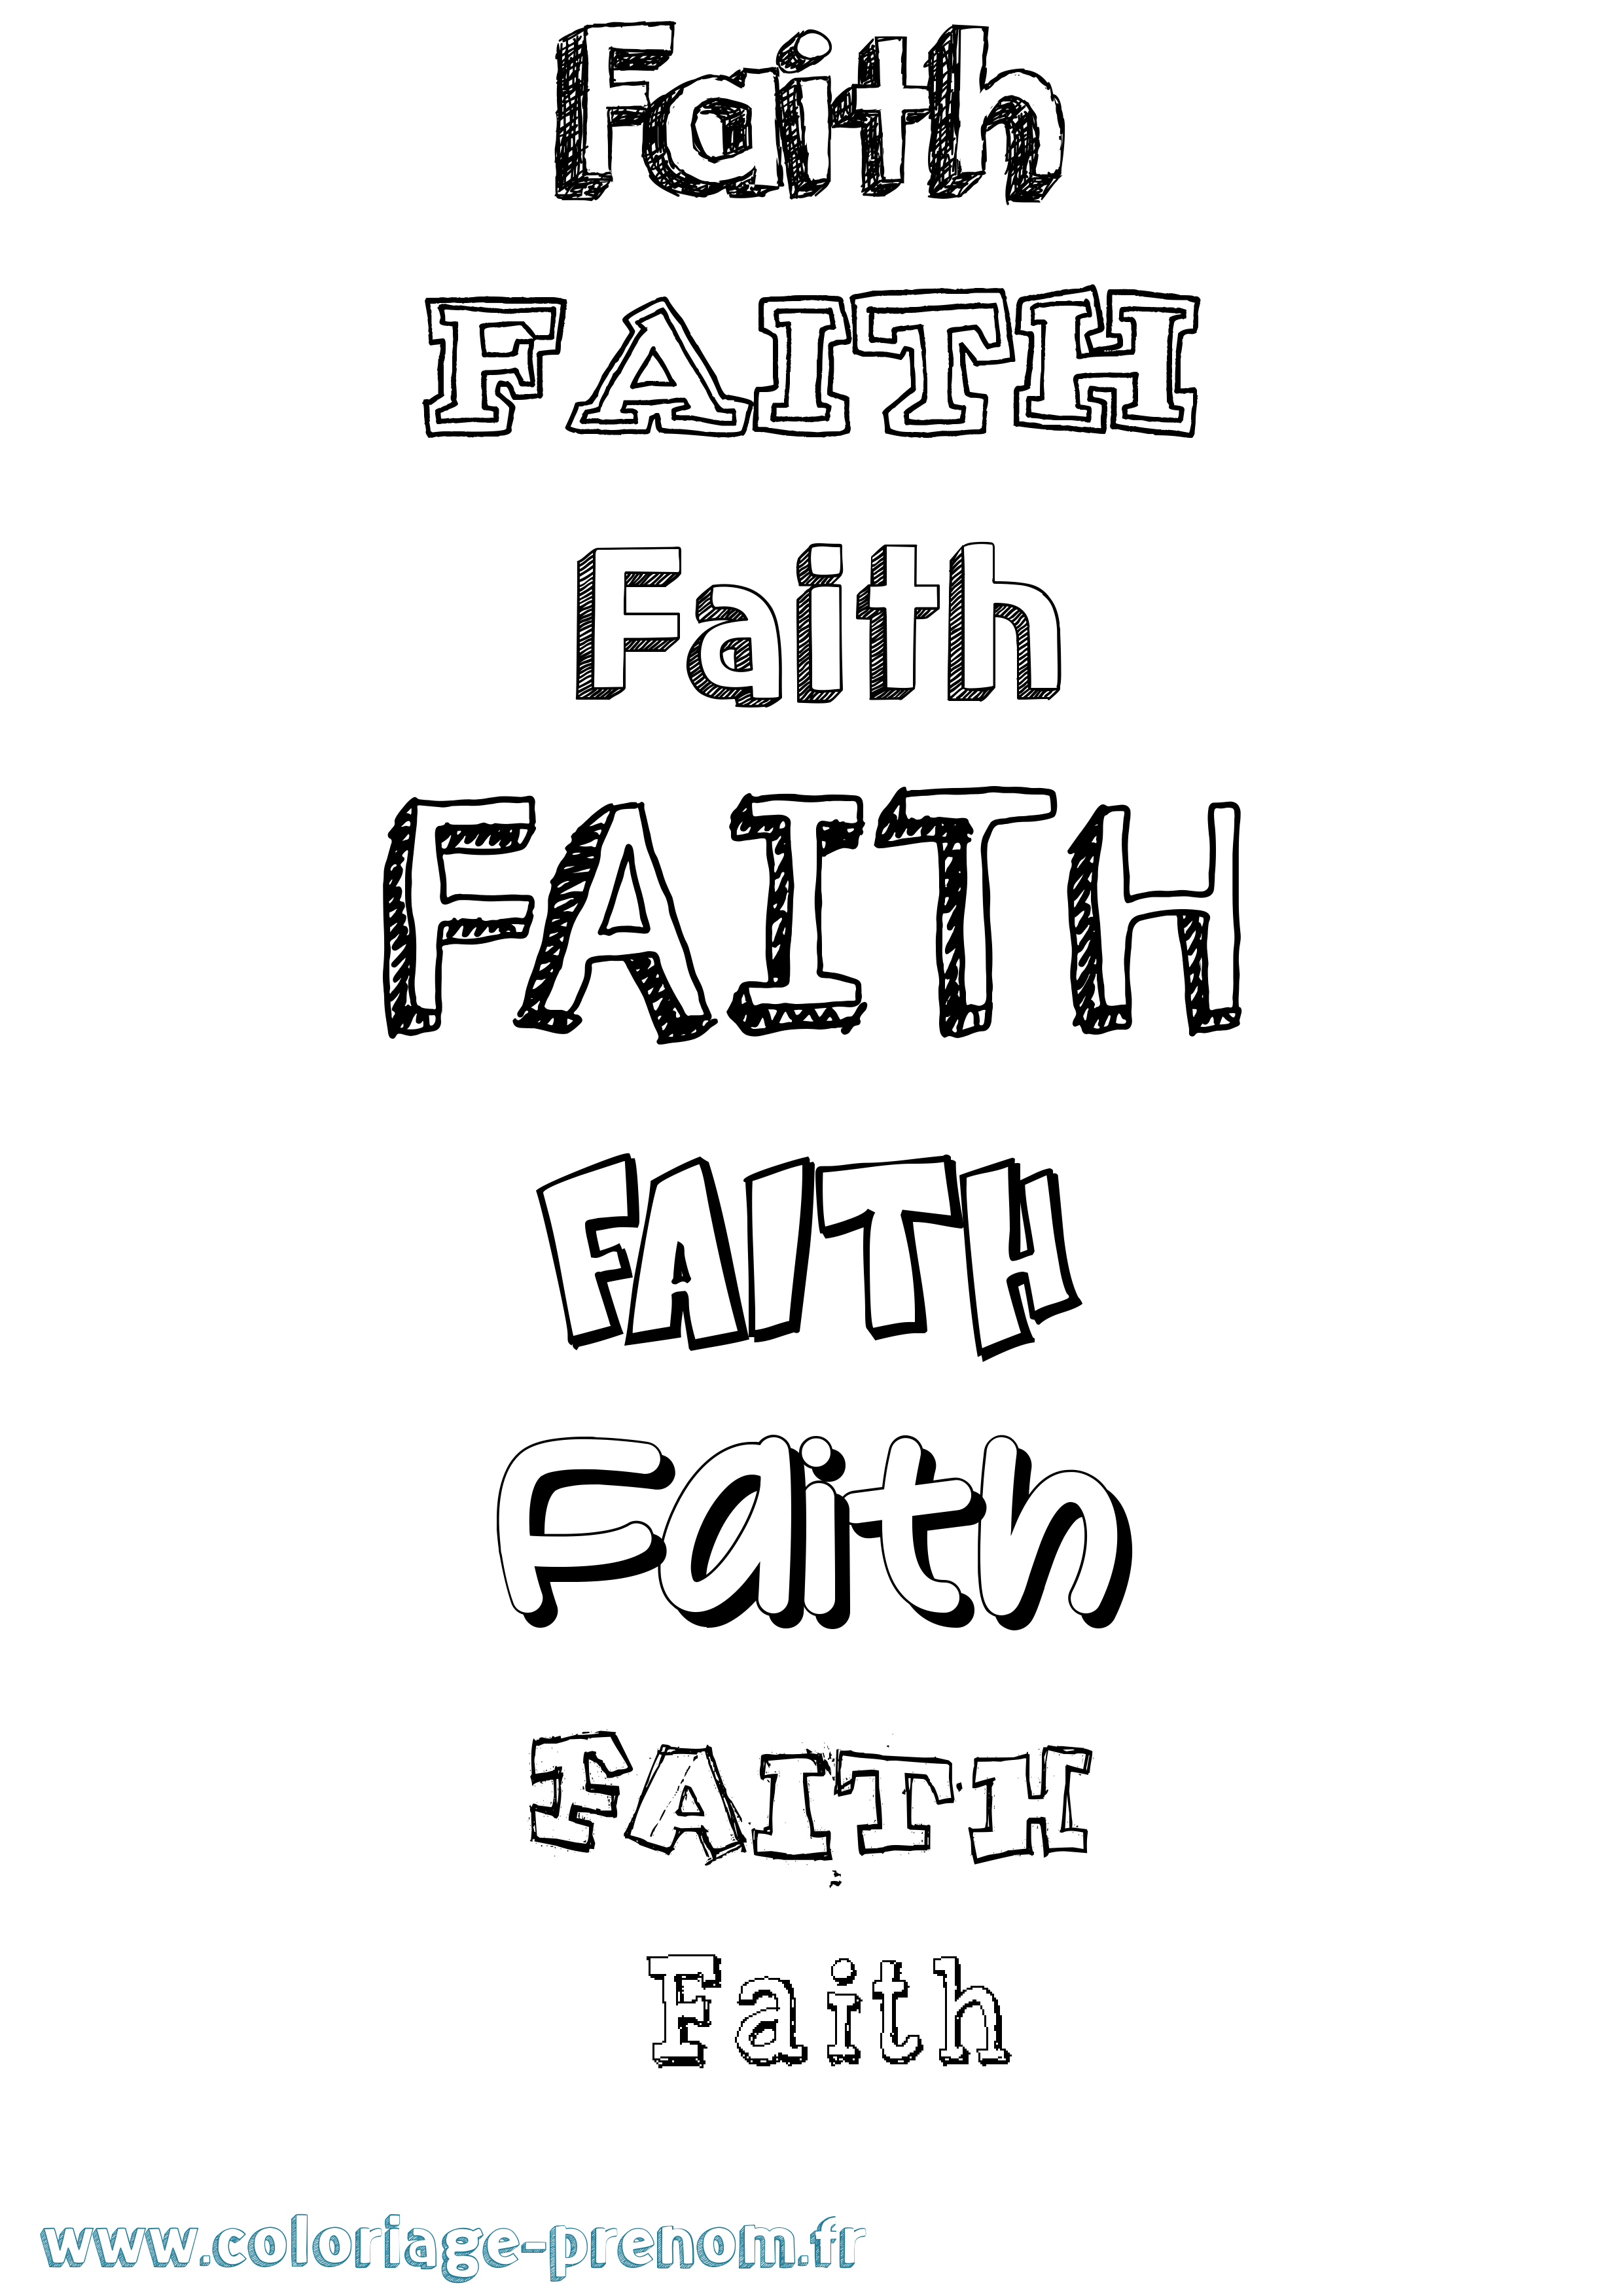 Coloriage prénom Faith Dessiné